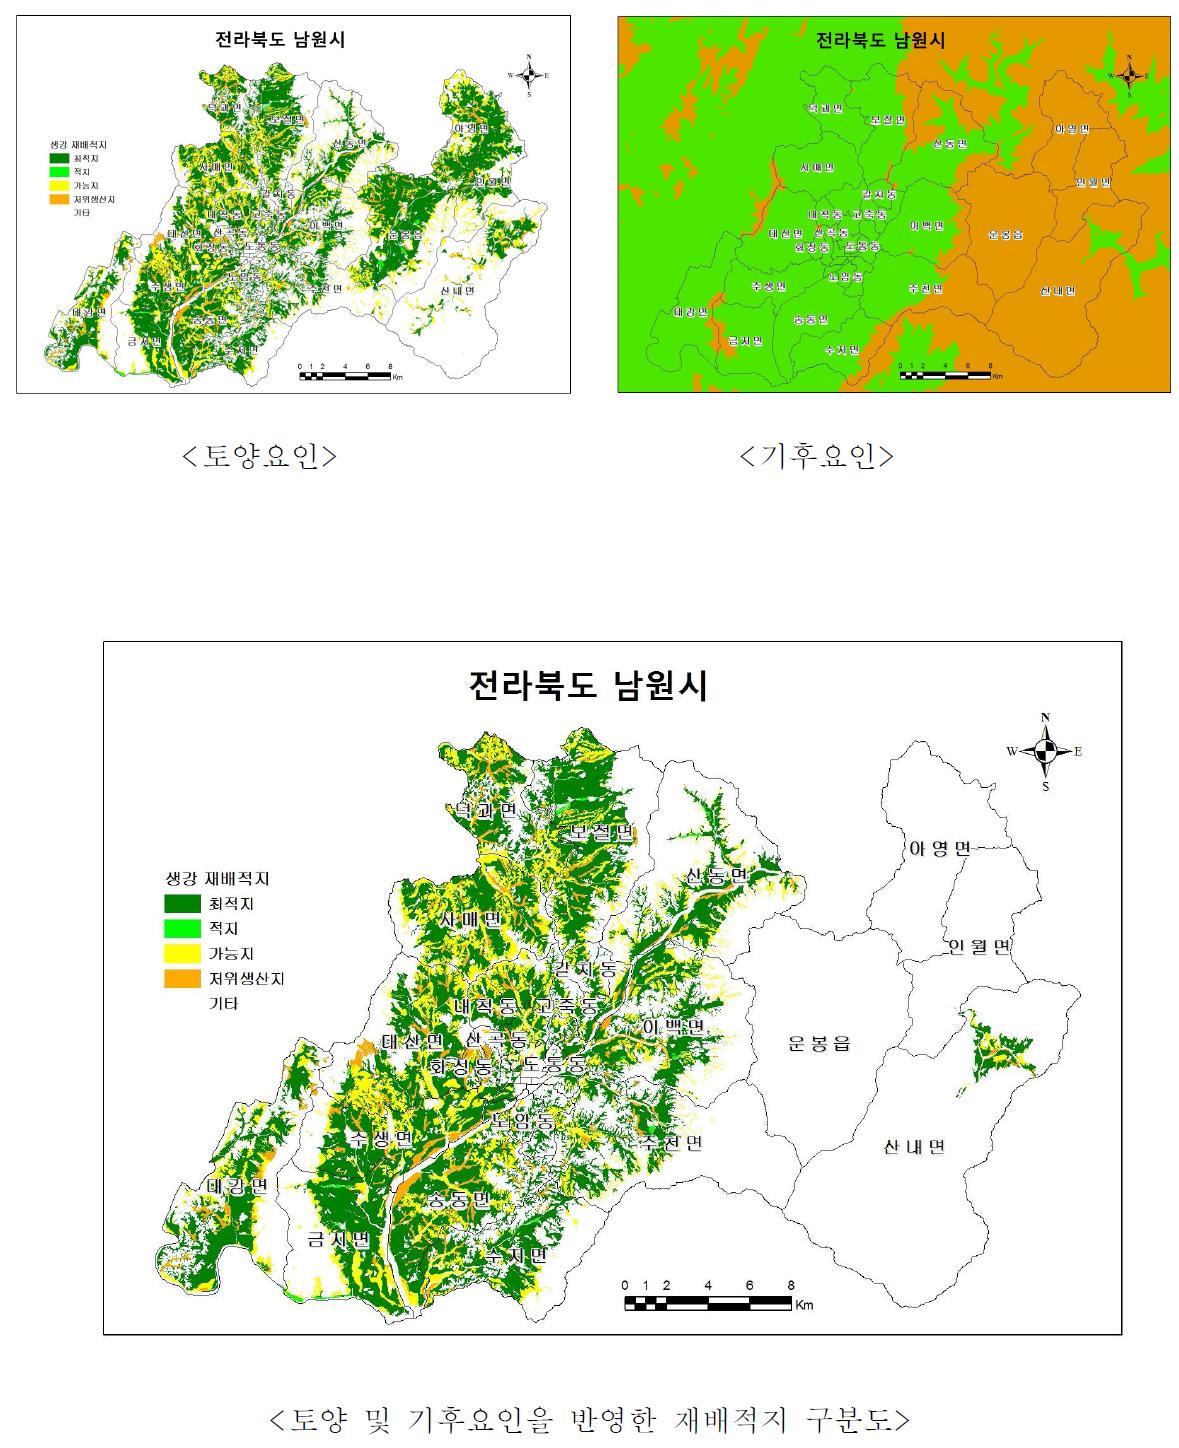 재배적지구분도 (예: 생강, 전북 남원시, 2009)